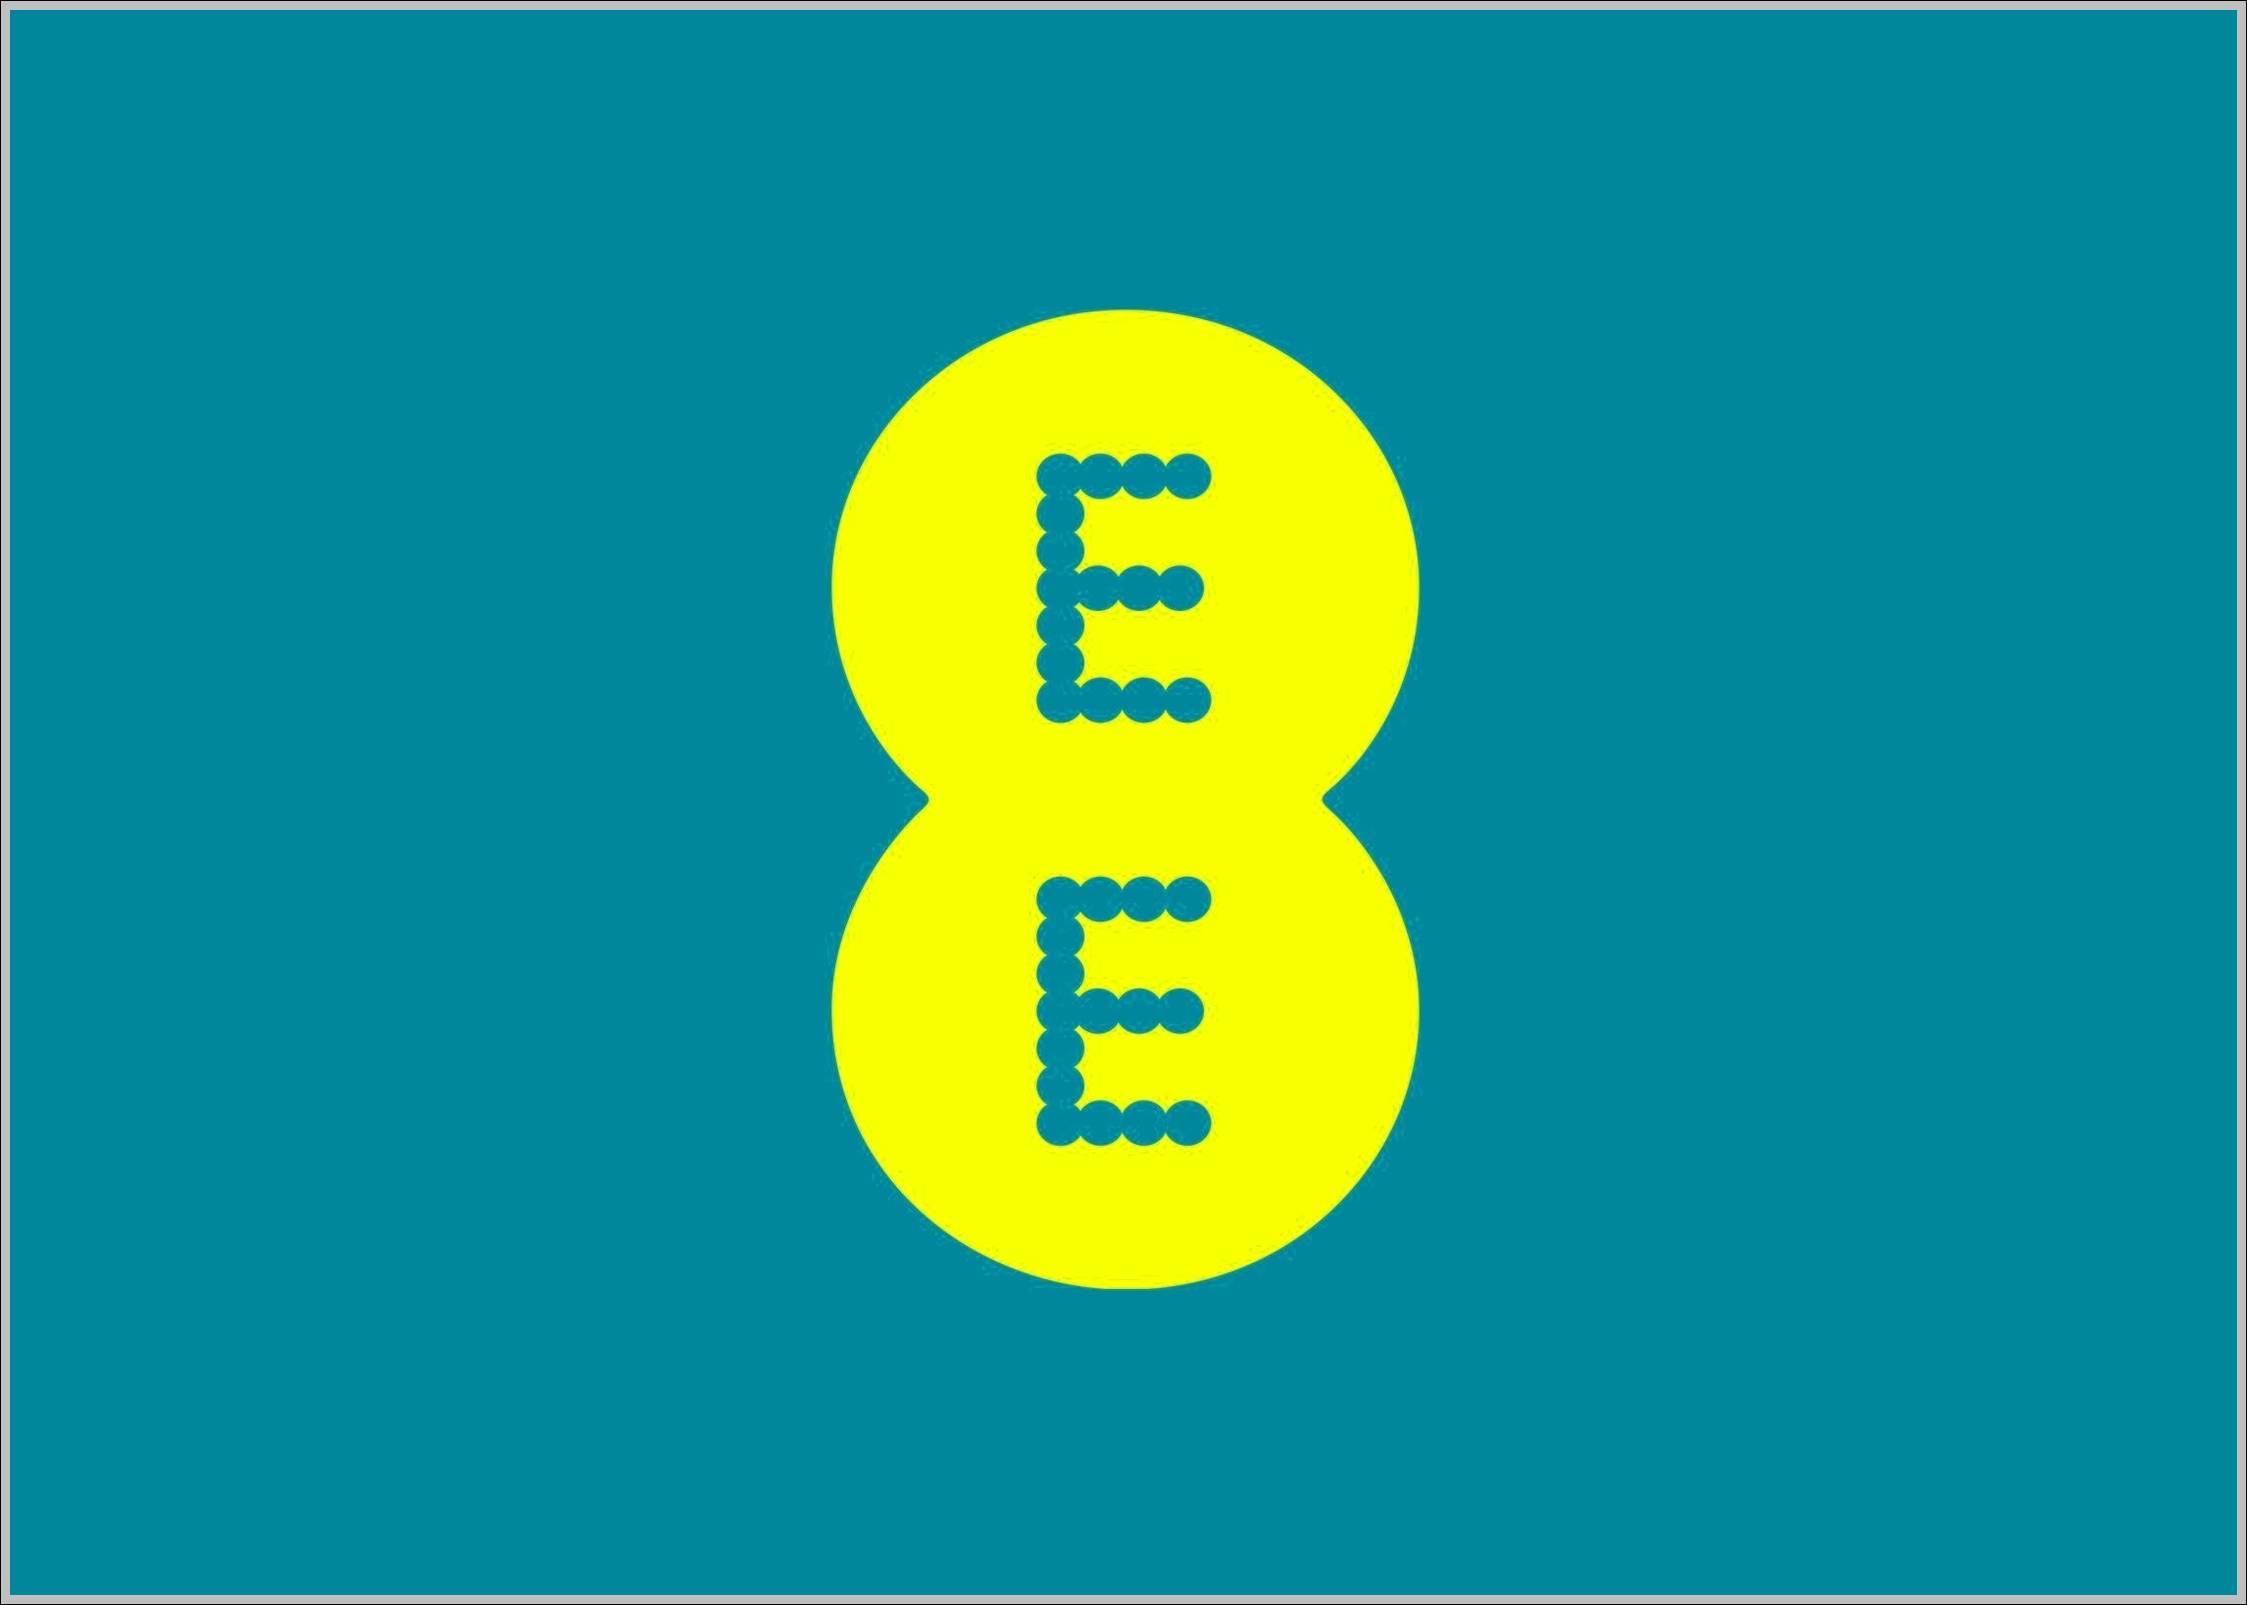 EE logo yellow